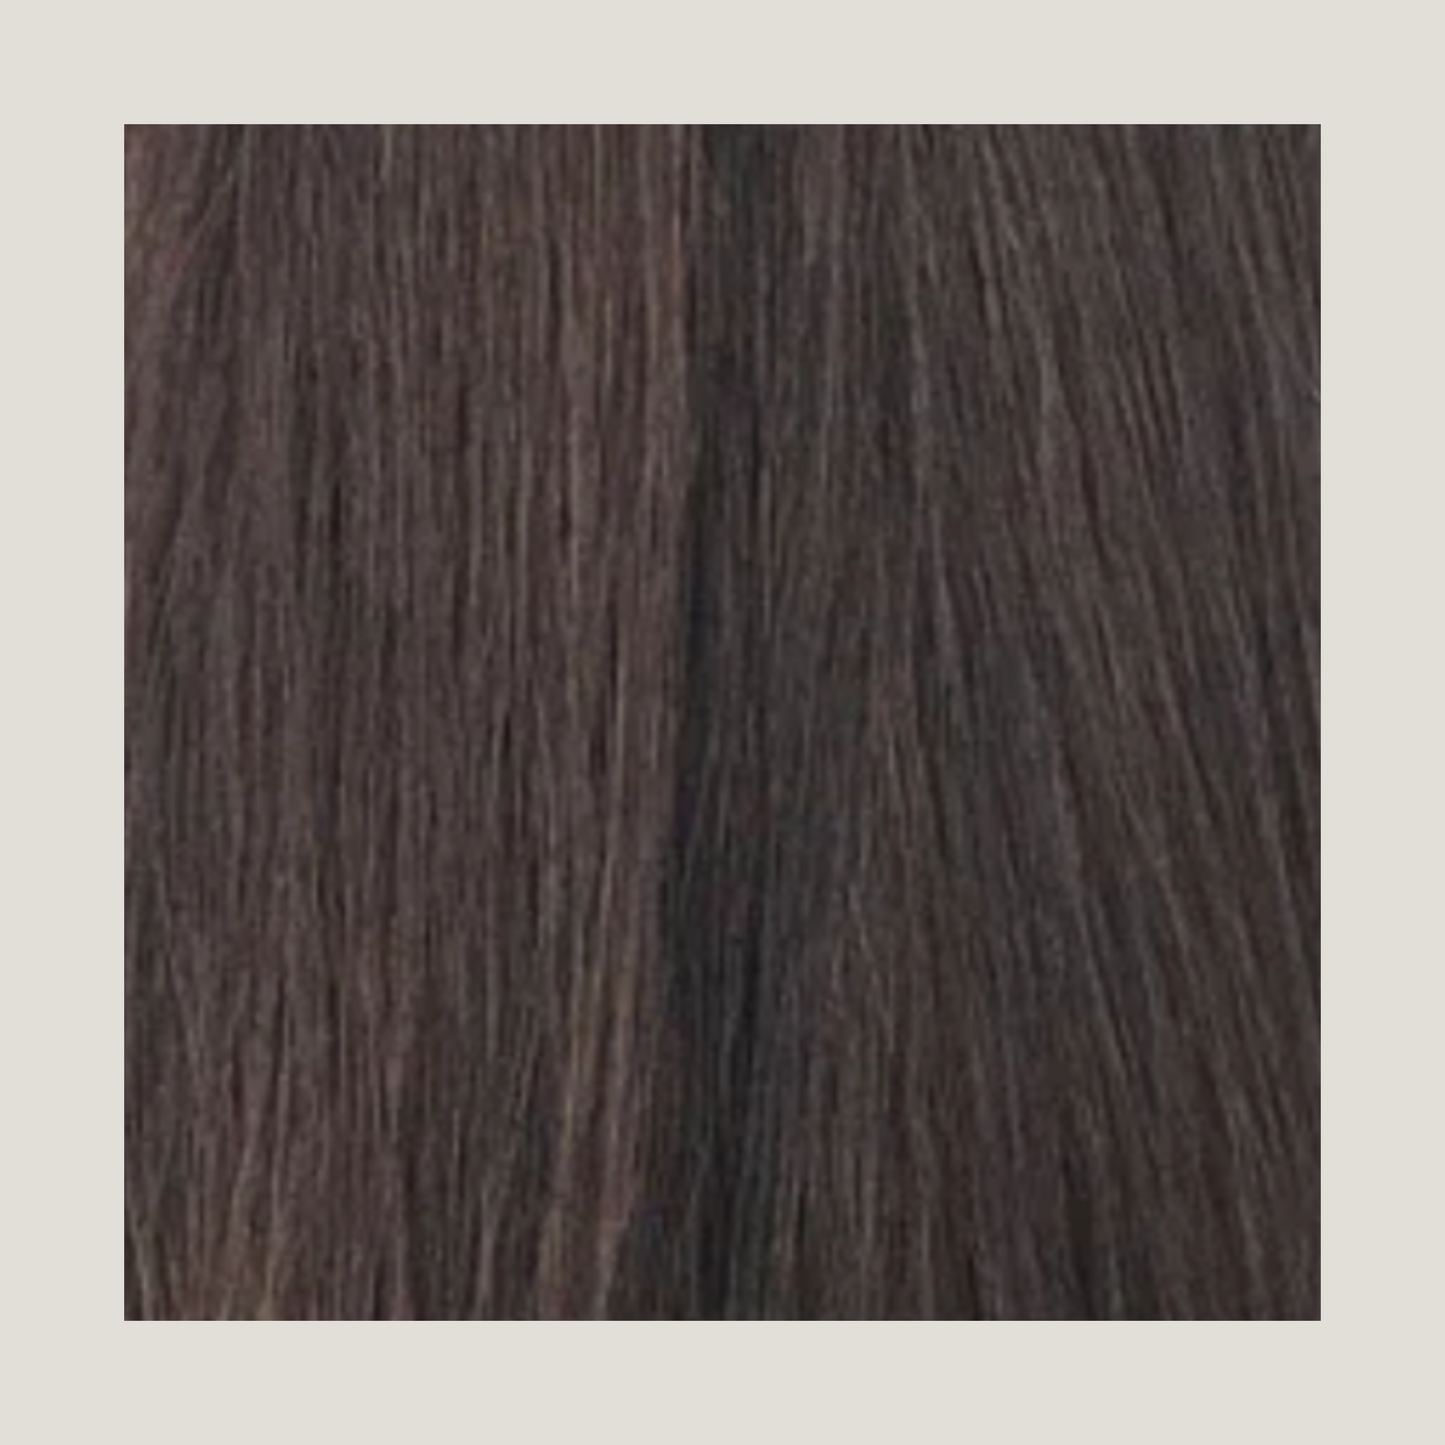 שיער אנושי של רמי בתולה אירופאית מצוירת כפולה, שורט